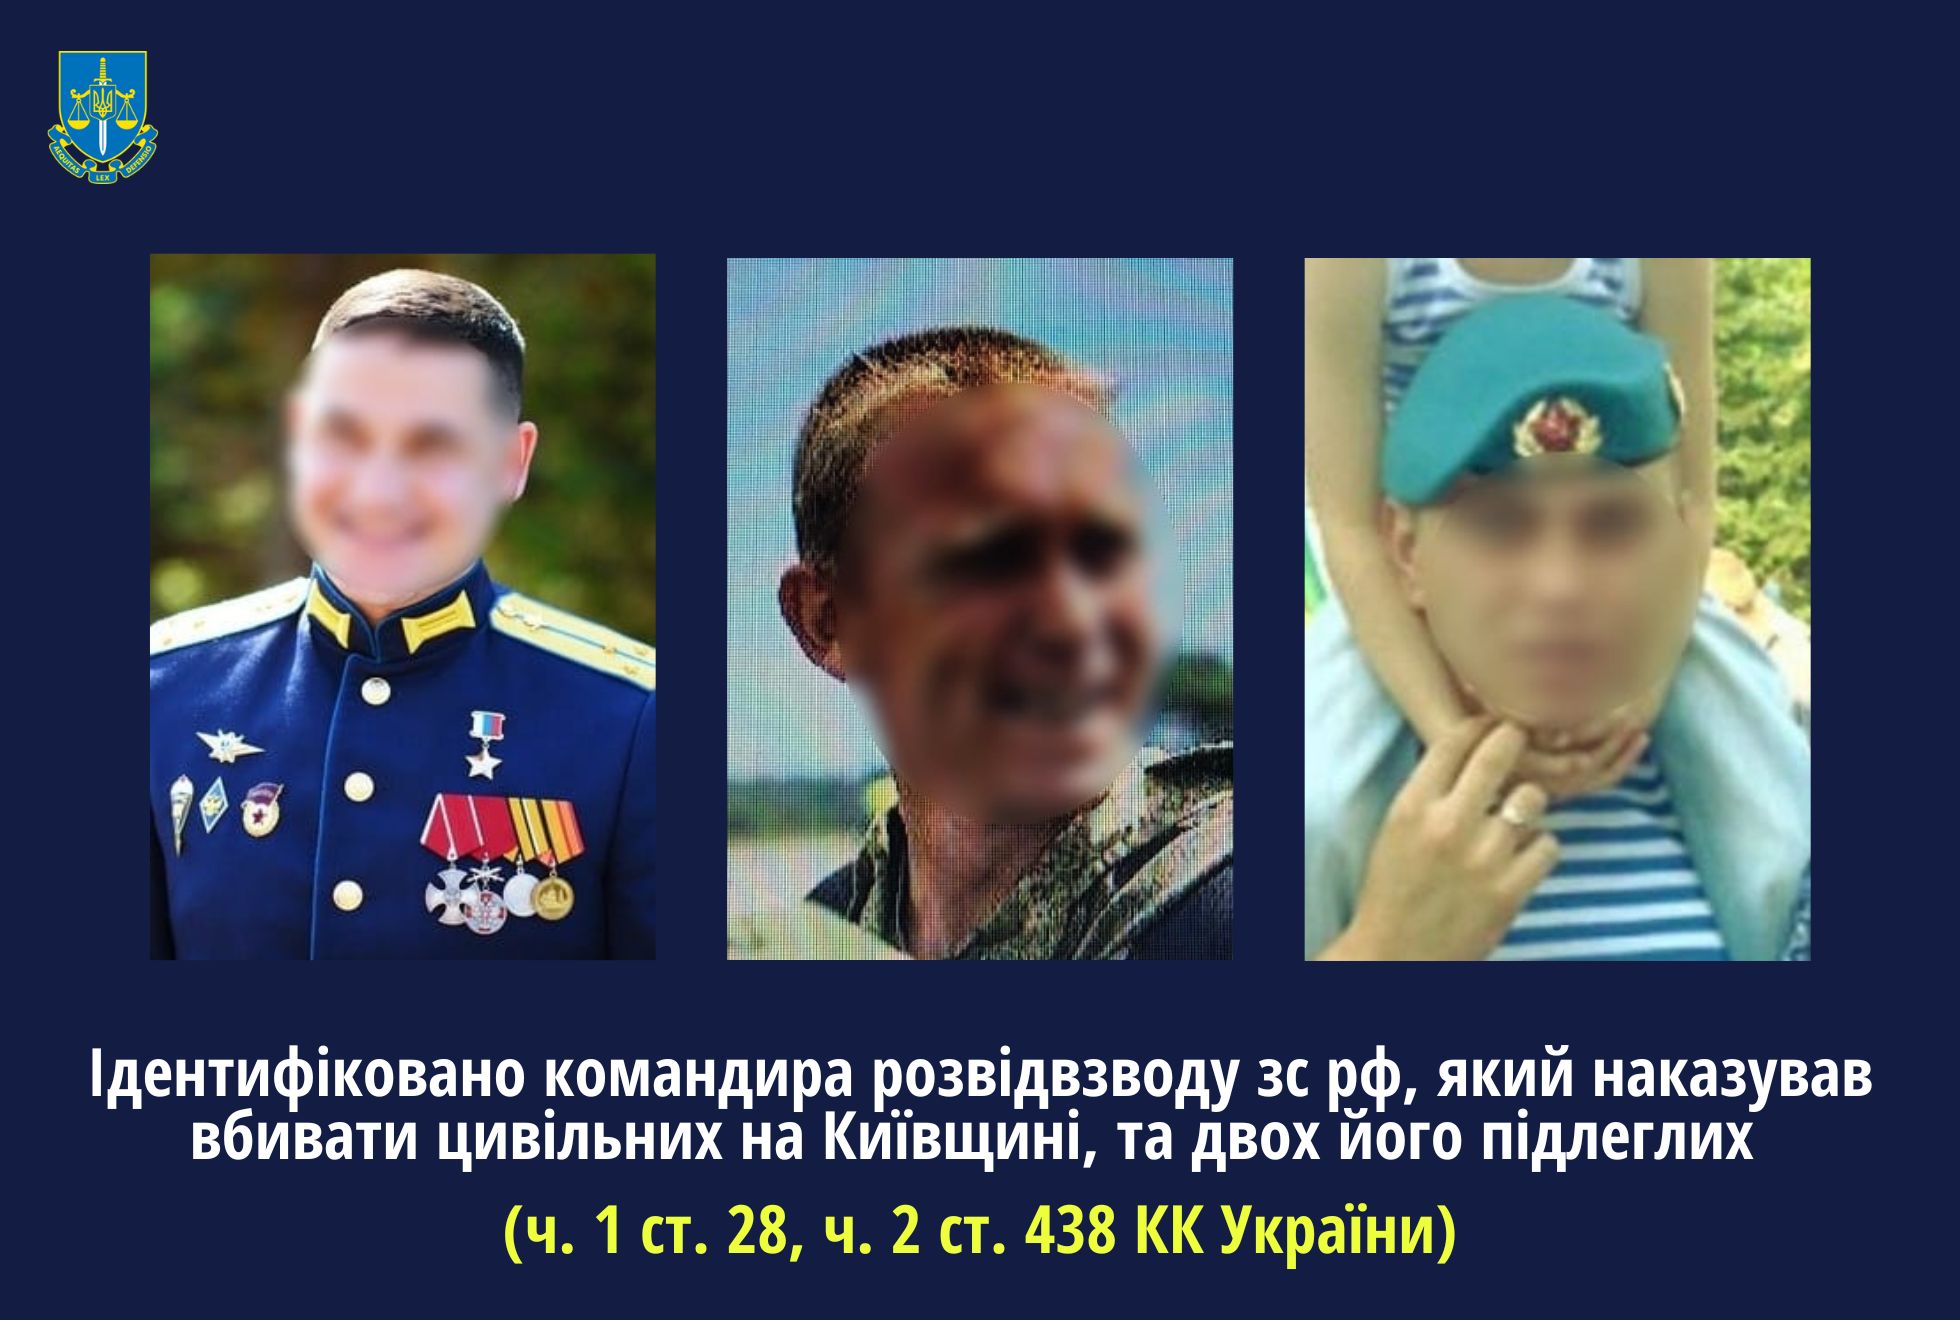 Ідентифіковано командира розвідвзводу зс рф, який наказував вбивати цивільних на Київщині і за це отримав звання «героя рф»